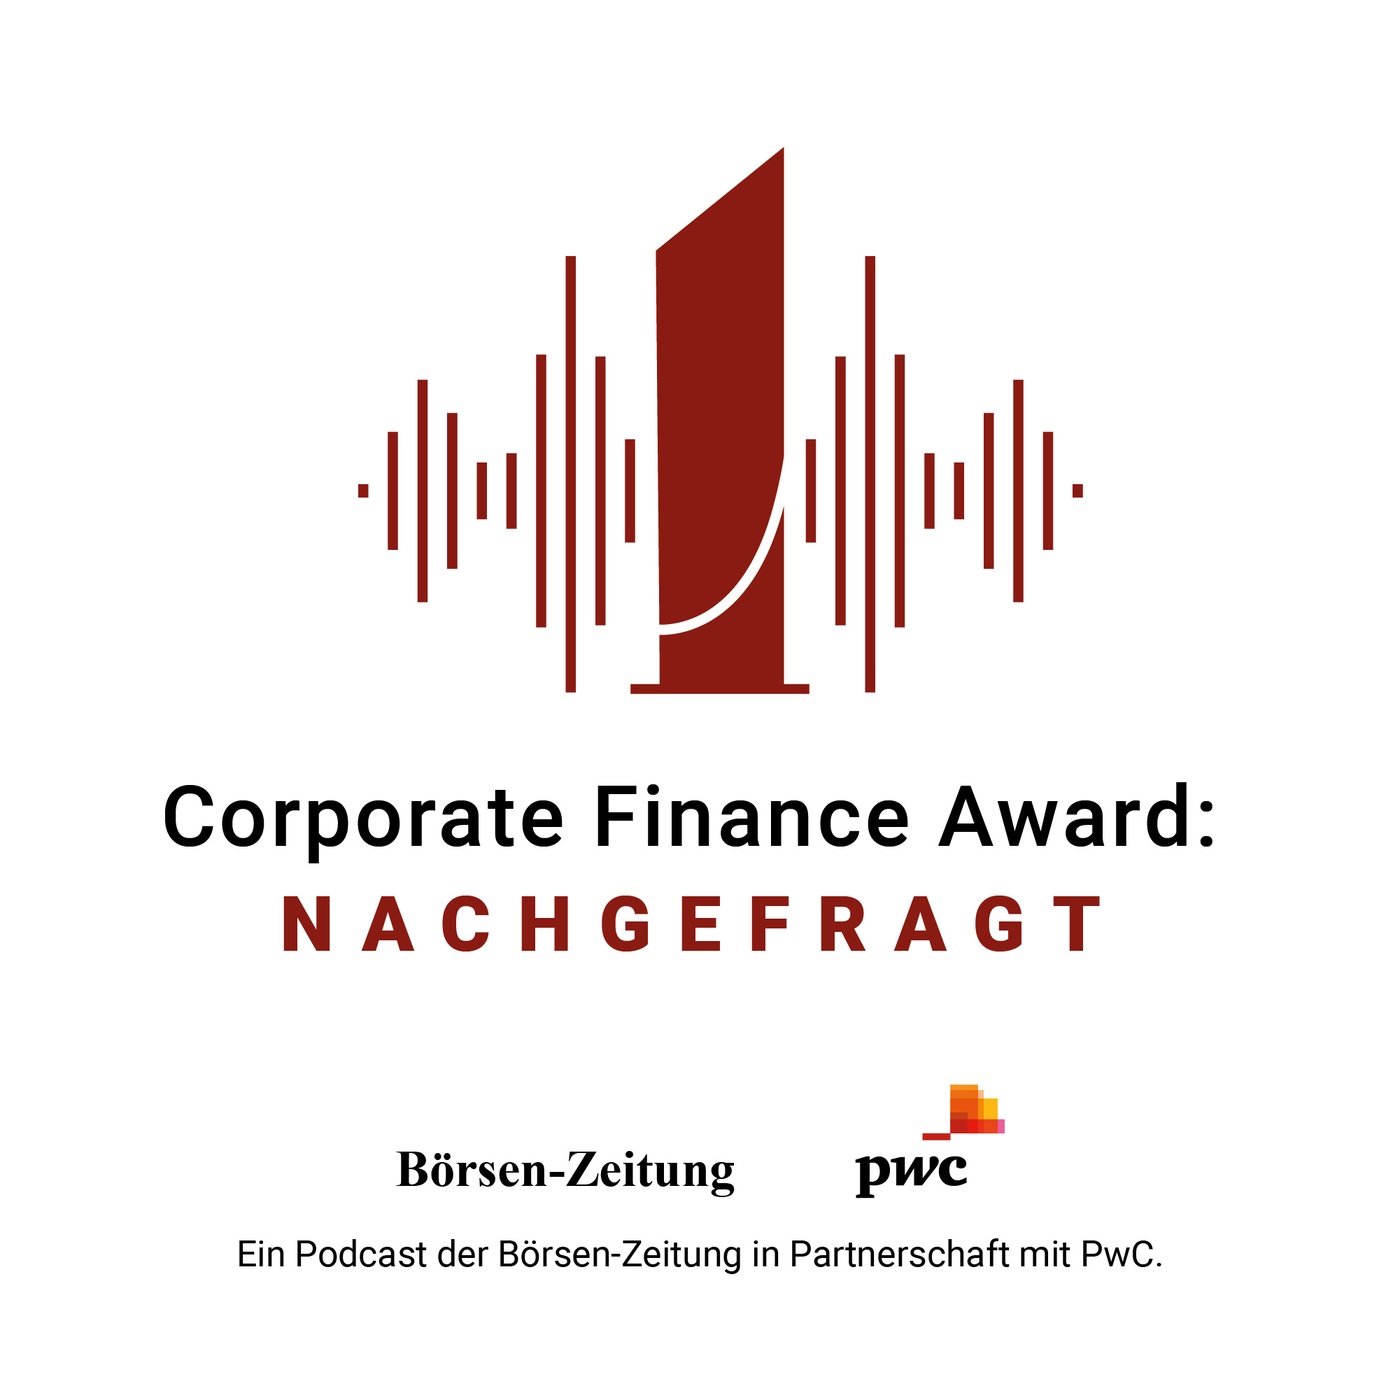 Preisträger 2023 - IPO: Andreas Reisse, CEO Schott Pharma, und Dr. Frank Heinricht, CEO Schott AG